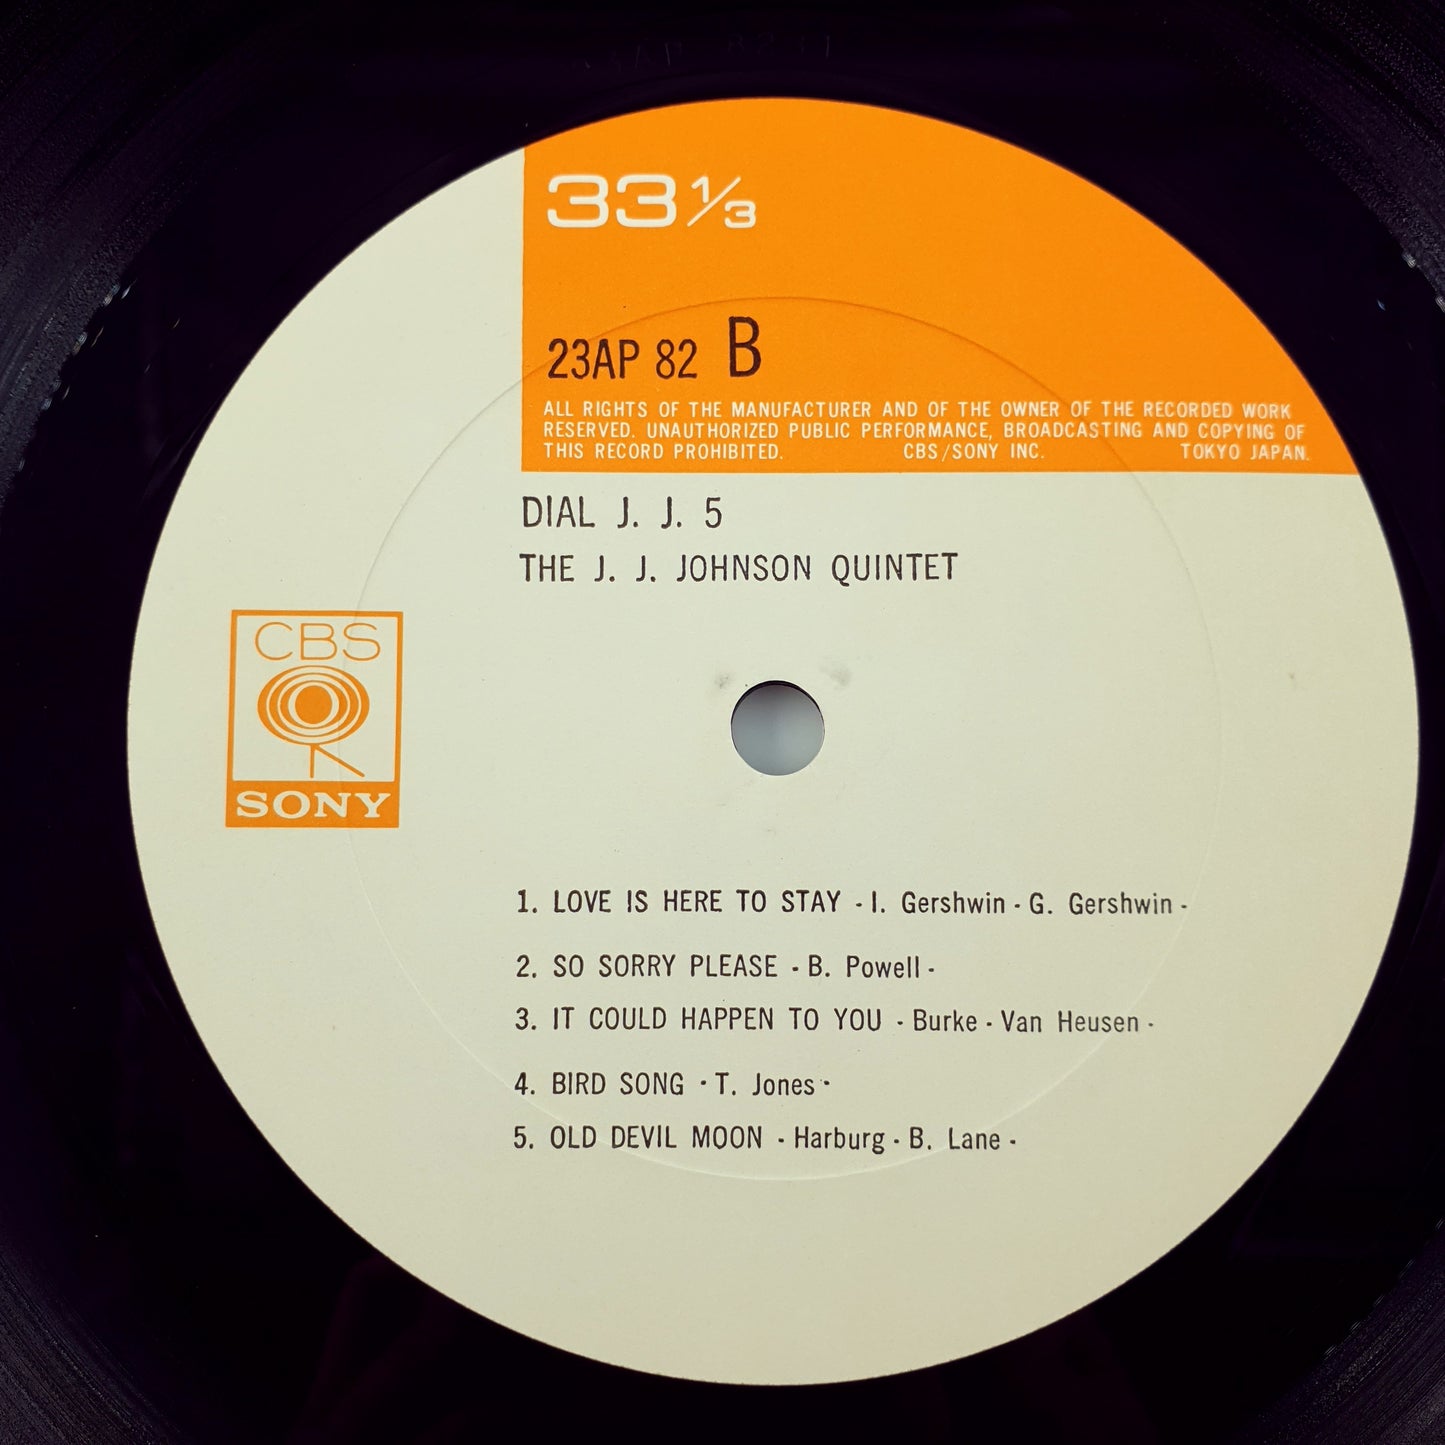 The J.J. Johnson Quintet – Dial J.J. 5